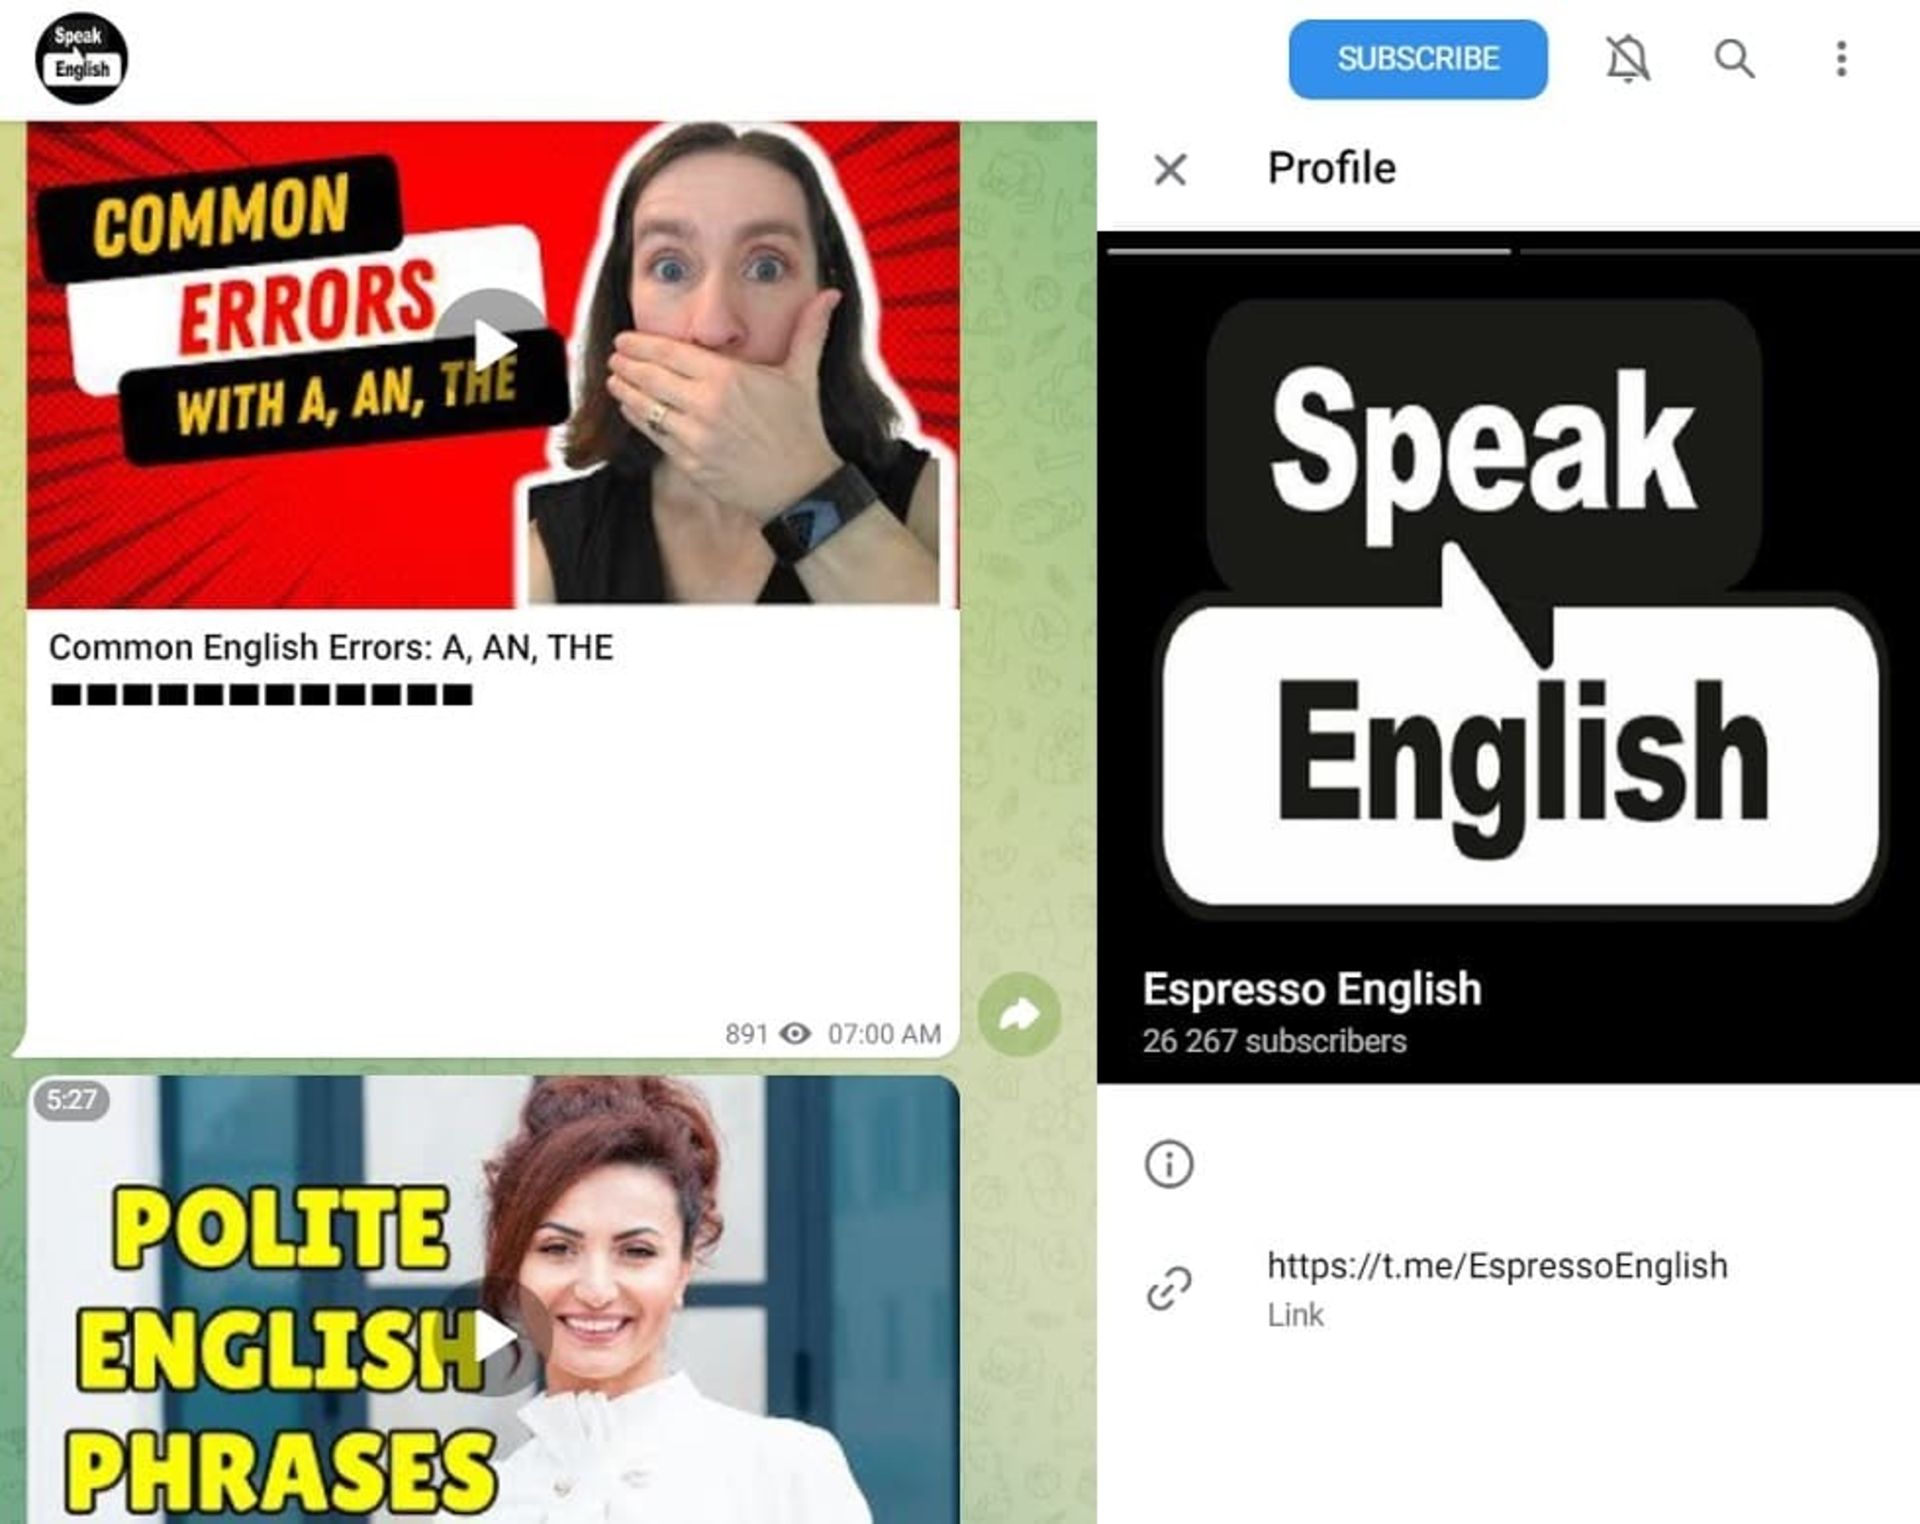 کانال انگلیسی تلگرام آموزش زبان espresso english